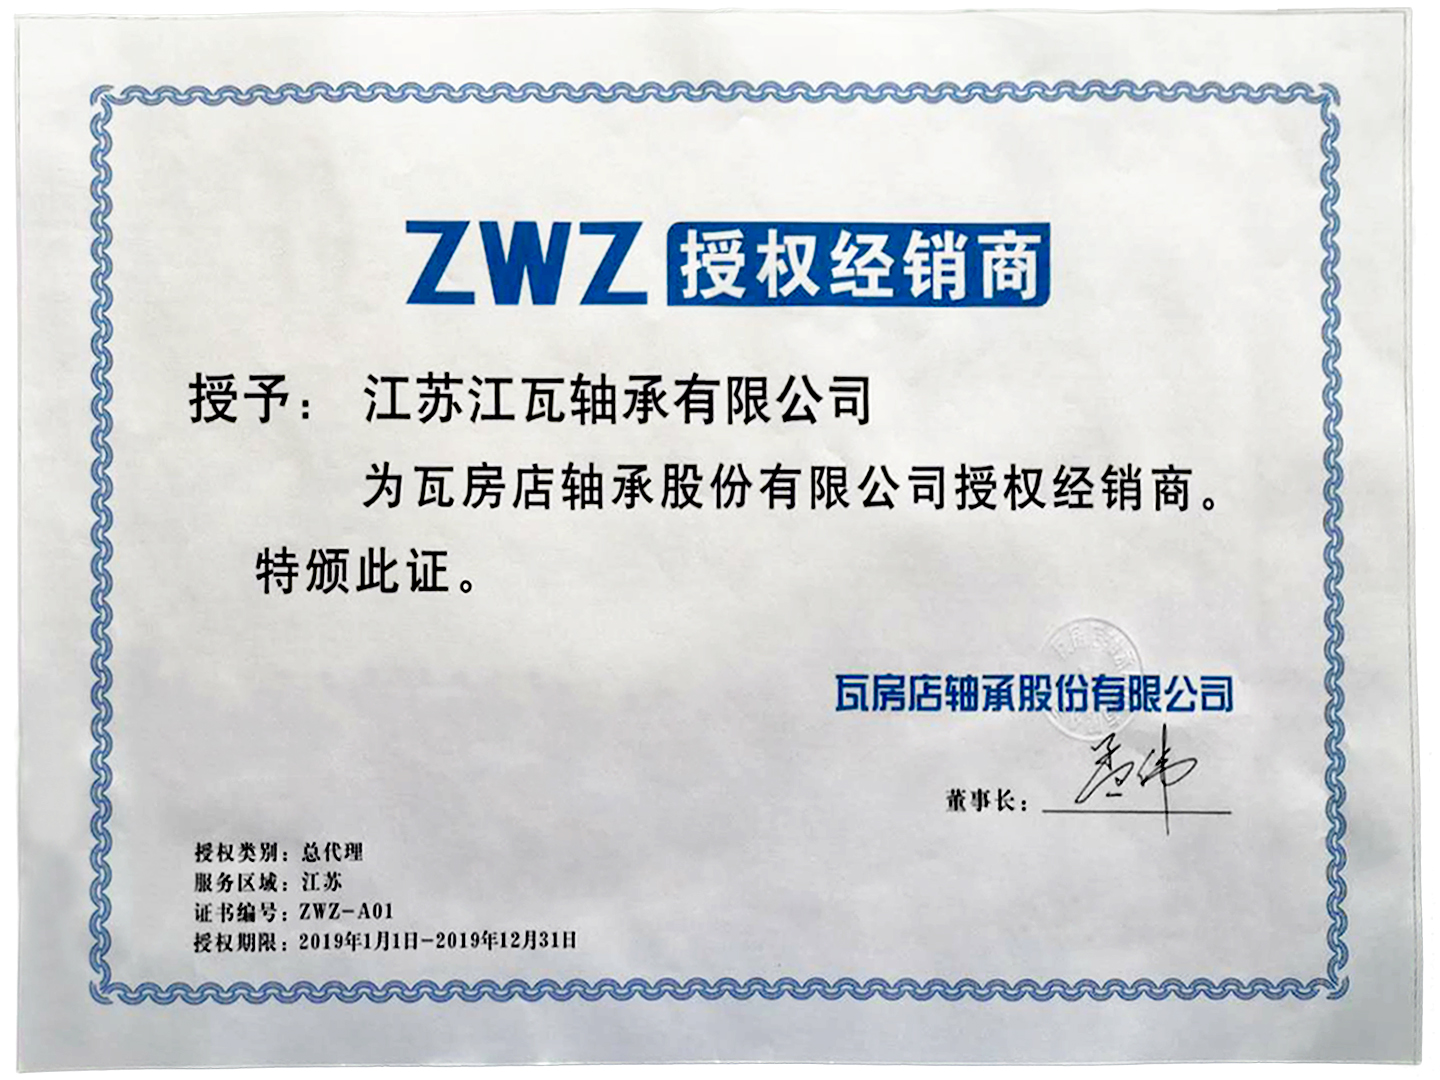 江苏江瓦 ZWZ  瓦轴  瓦房店轴承授权经销商无锡轴承公司